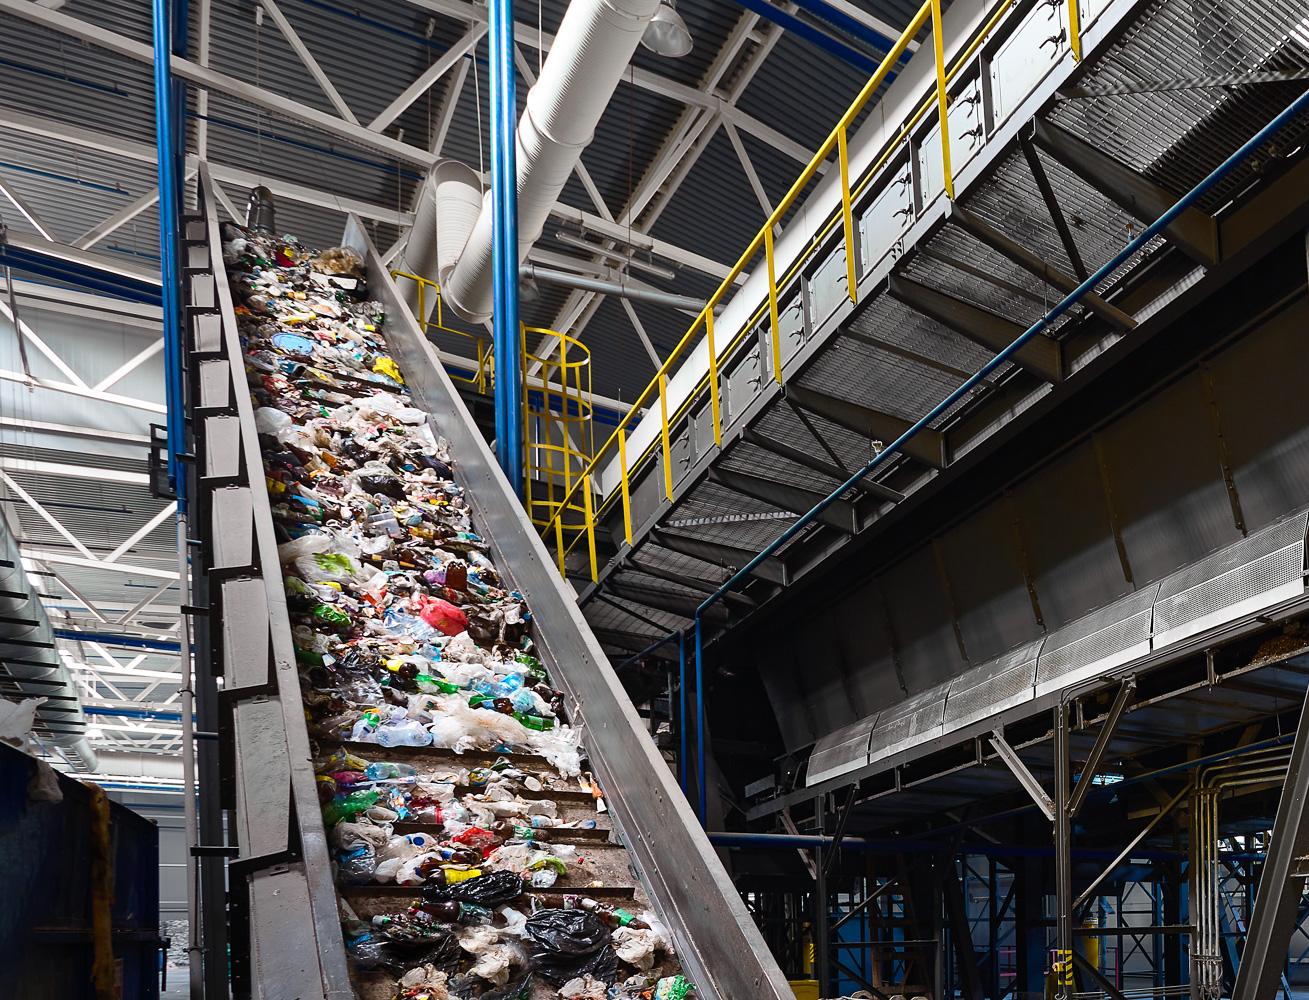 В Брянской области введут дуальную систему накопления бытовых отходов